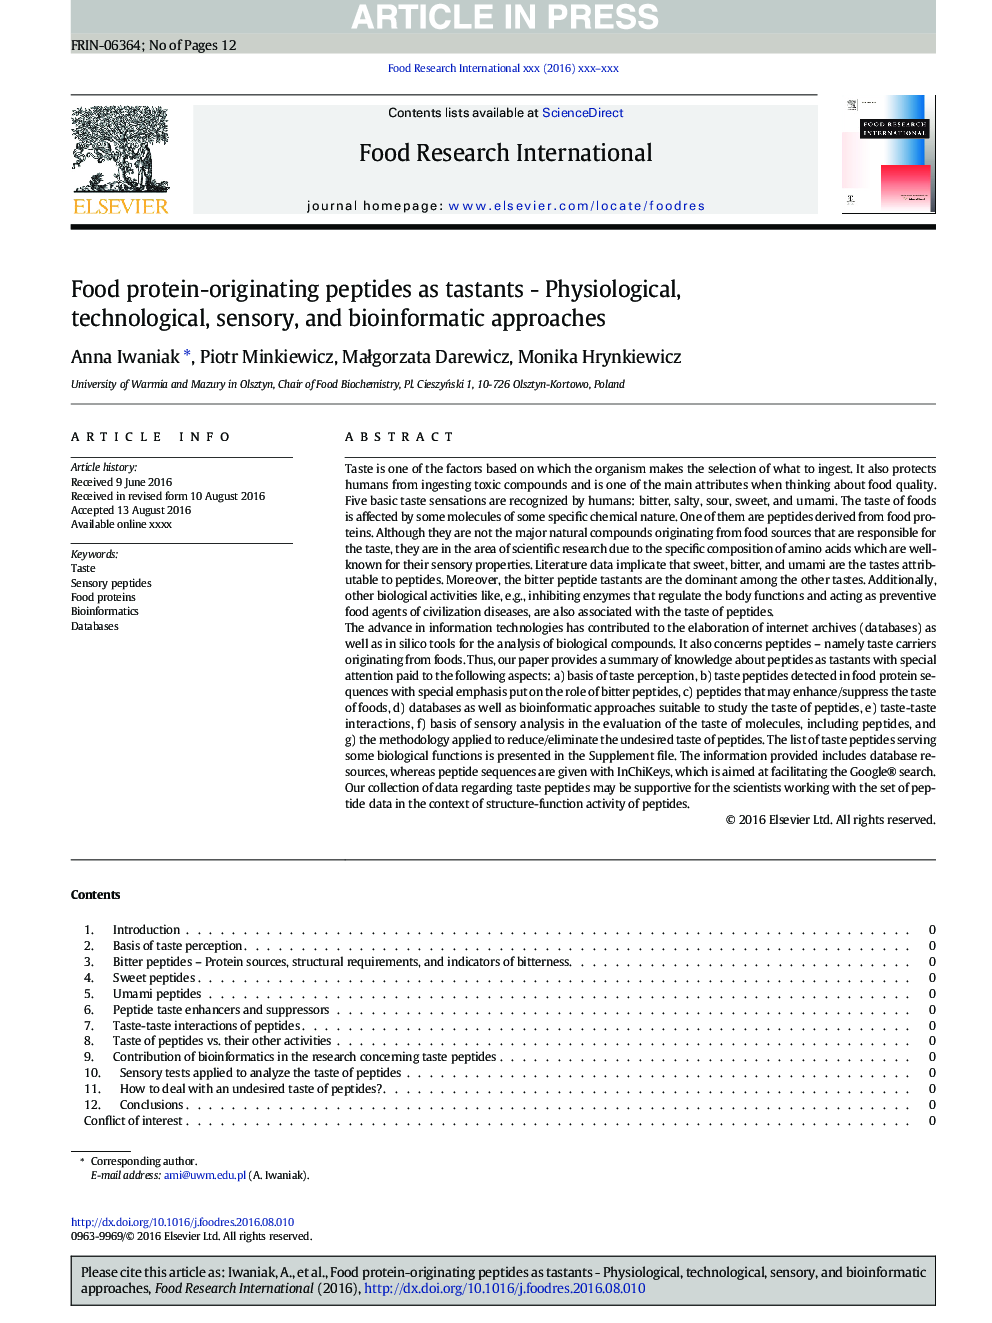 پپتید های پروتئینی غذایی به عنوان مشتقات - رویکردهای فیزیولوژیکی، تکنولوژیکی، حسی و بیوانفورماتیک 